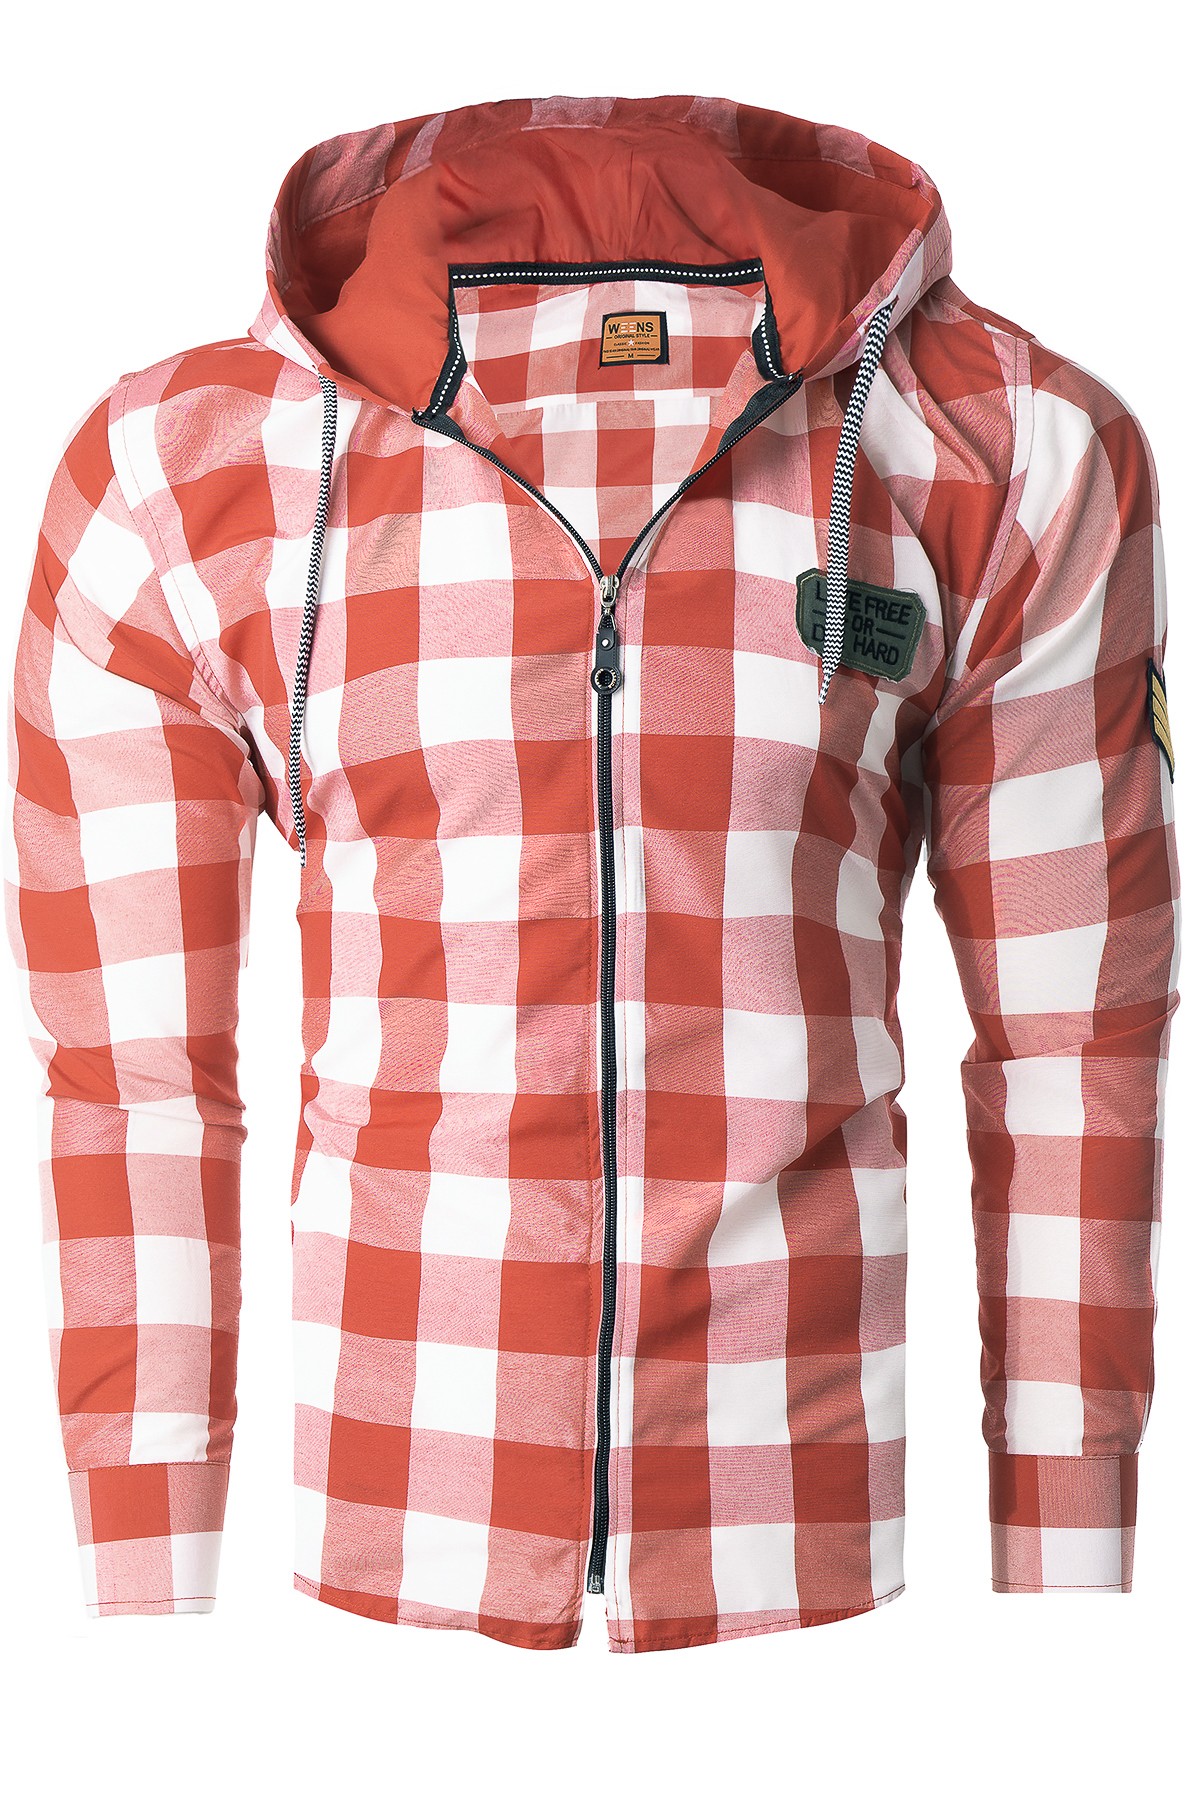 Koszula z kapturem rl60 - czerwono-biała